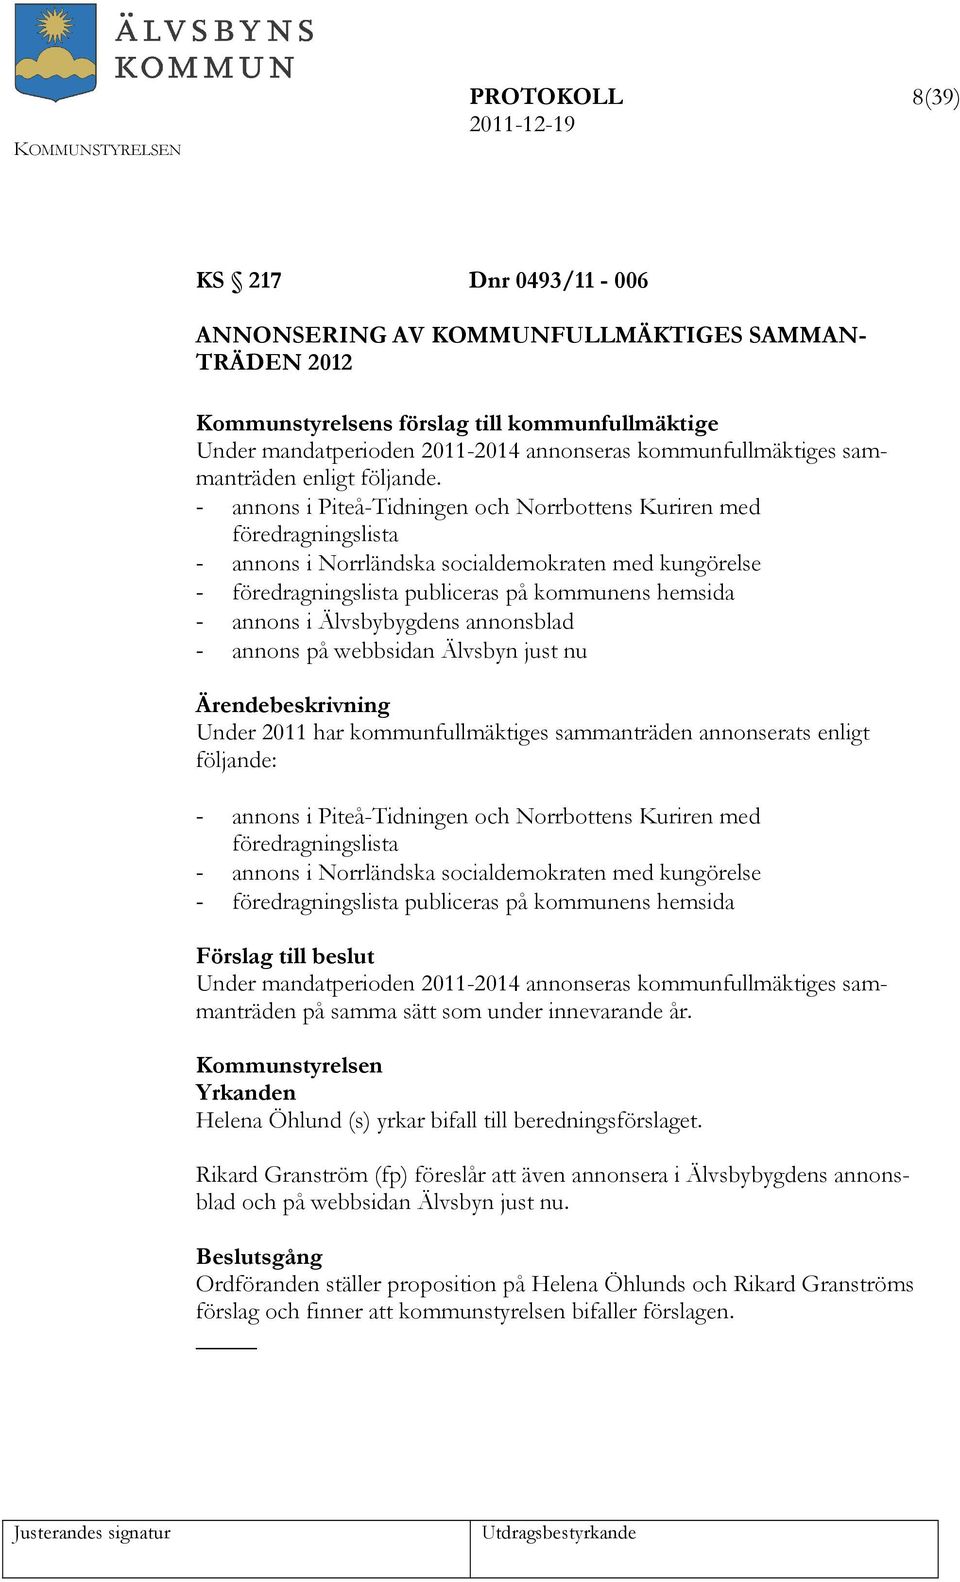 - annons i Piteå-Tidningen och Norrbottens Kuriren med föredragningslista - annons i Norrländska socialdemokraten med kungörelse - föredragningslista publiceras på kommunens hemsida - annons i